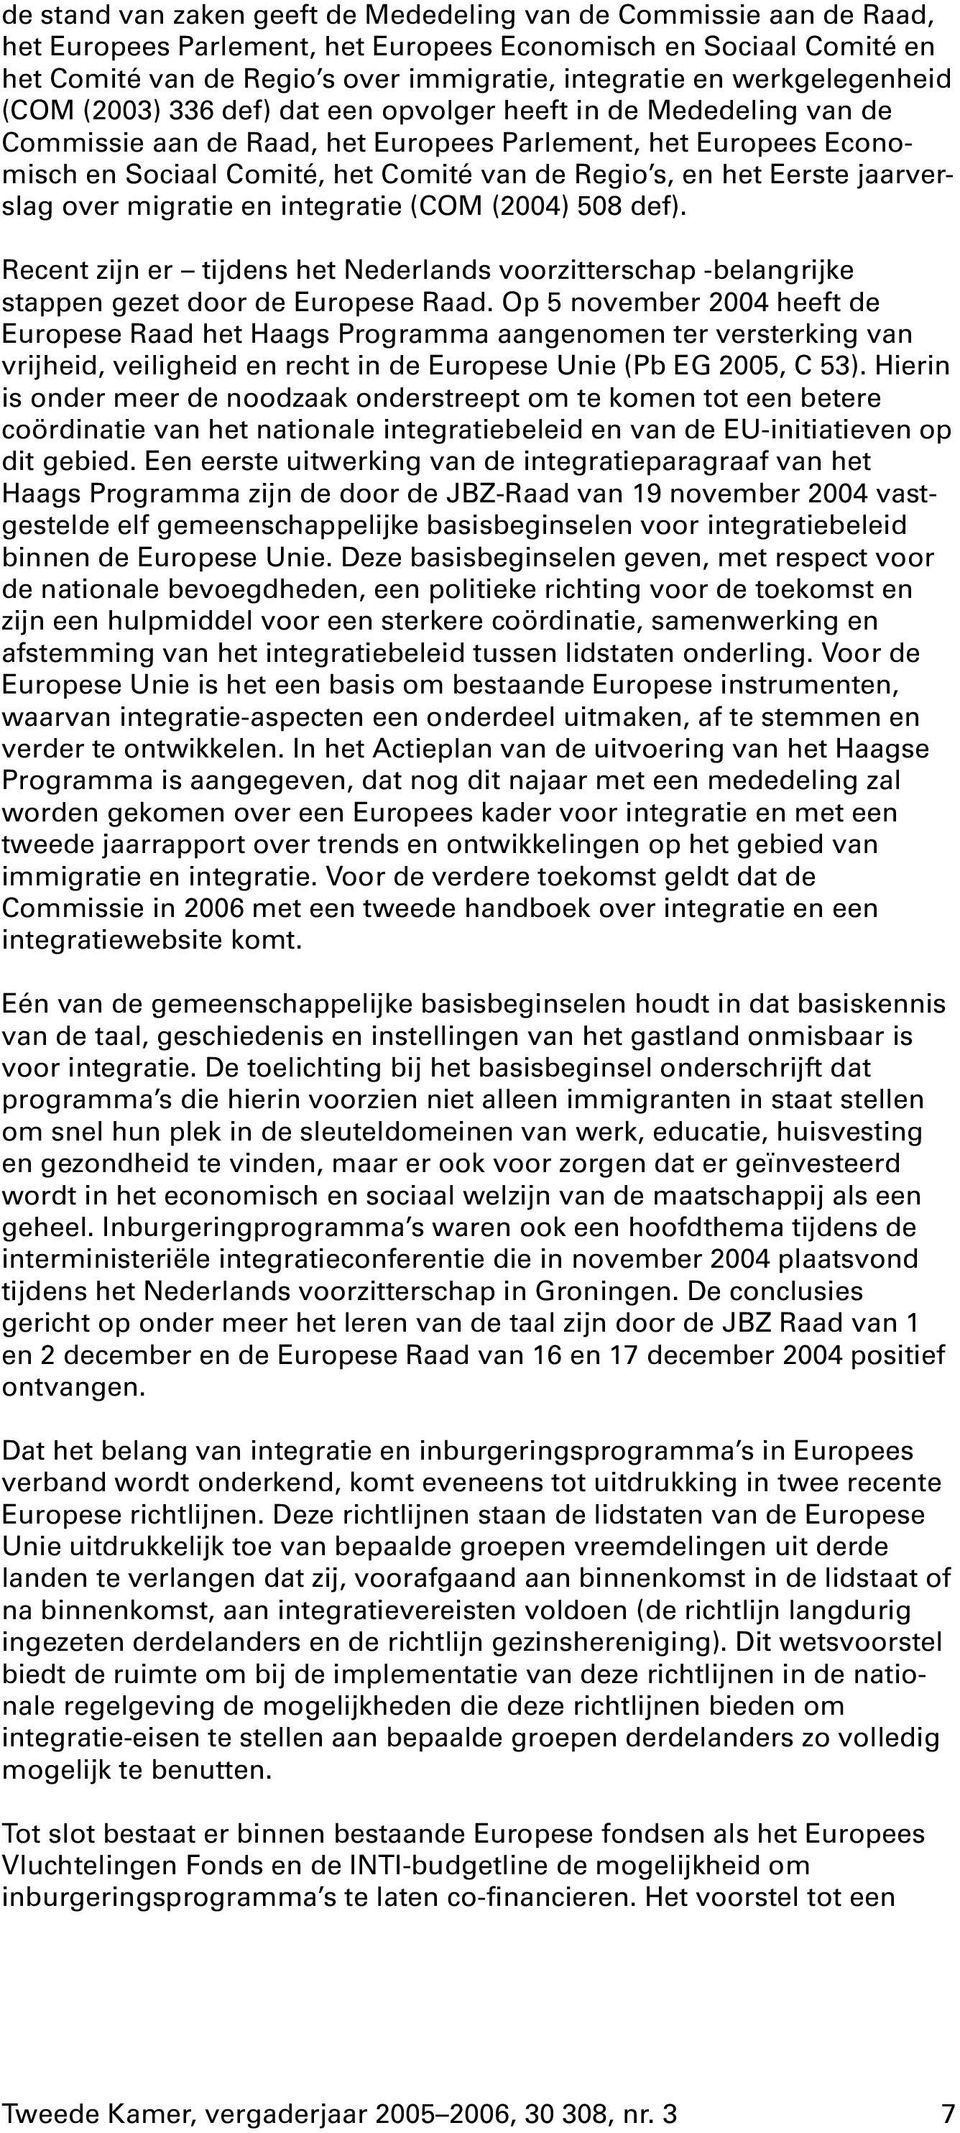 s, en het Eerste jaarverslag over migratie en integratie (COM (2004) 508def). Recent zijn er tijdens het Nederlands voorzitterschap -belangrijke stappen gezet door de Europese Raad.